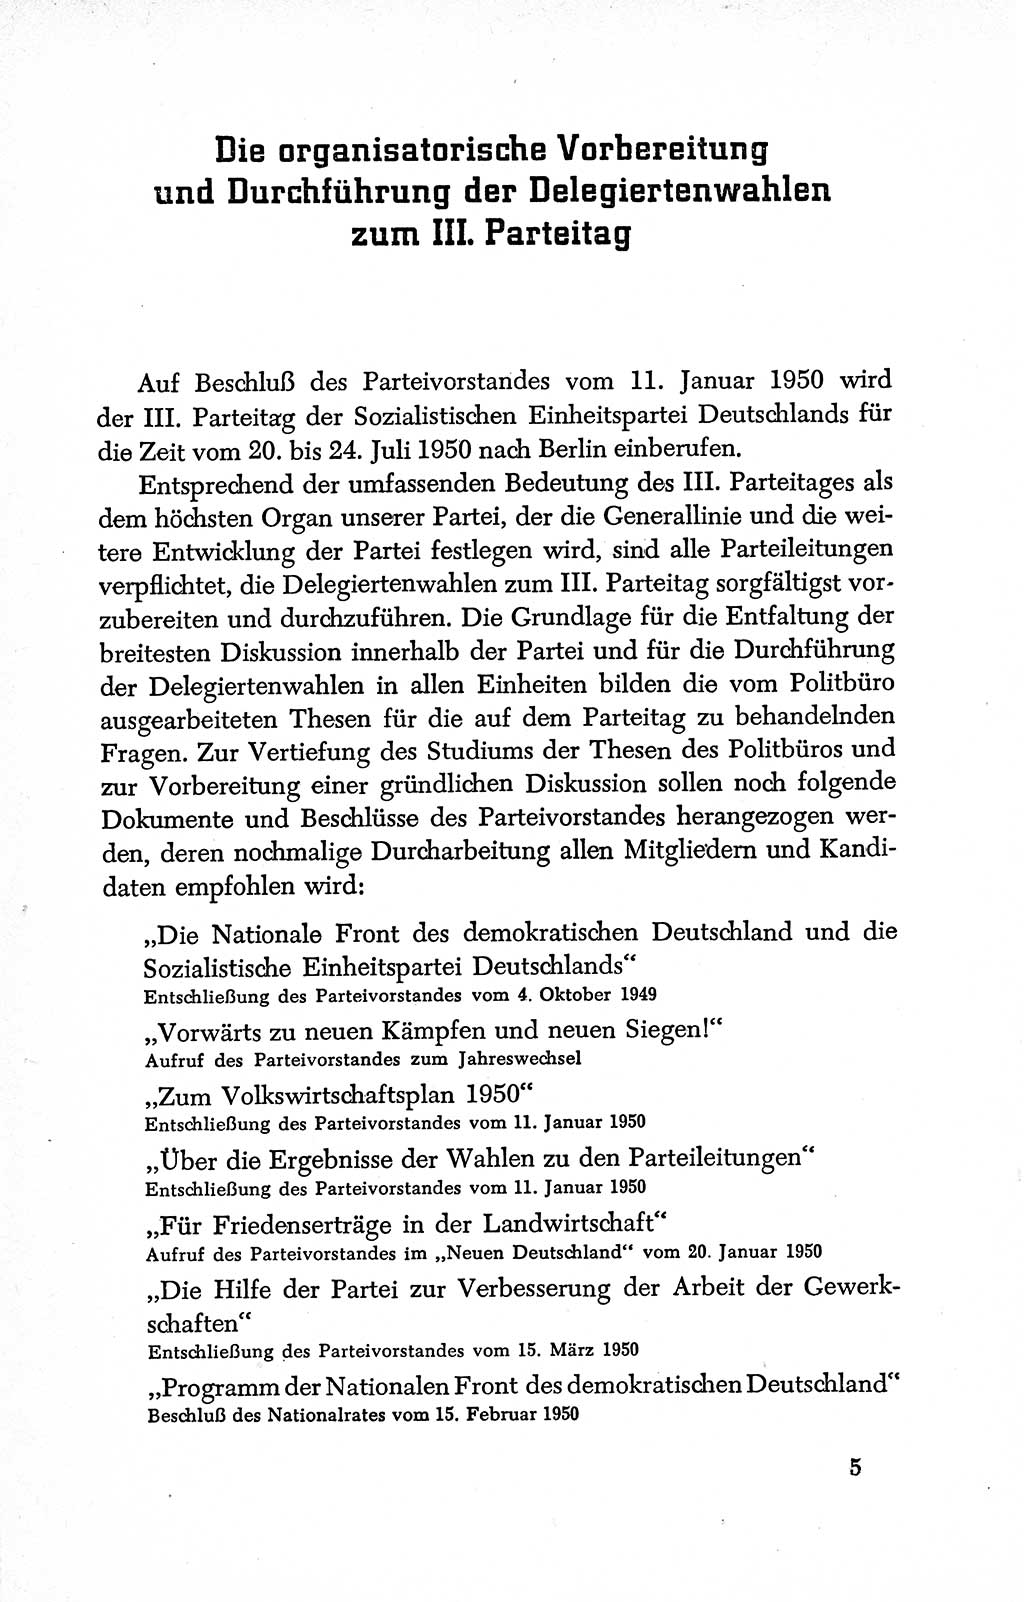 Dokumente der Sozialistischen Einheitspartei Deutschlands (SED) [Deutsche Demokratische Republik (DDR)] 1950-1952, Seite 5 (Dok. SED DDR 1950-1952, S. 5)